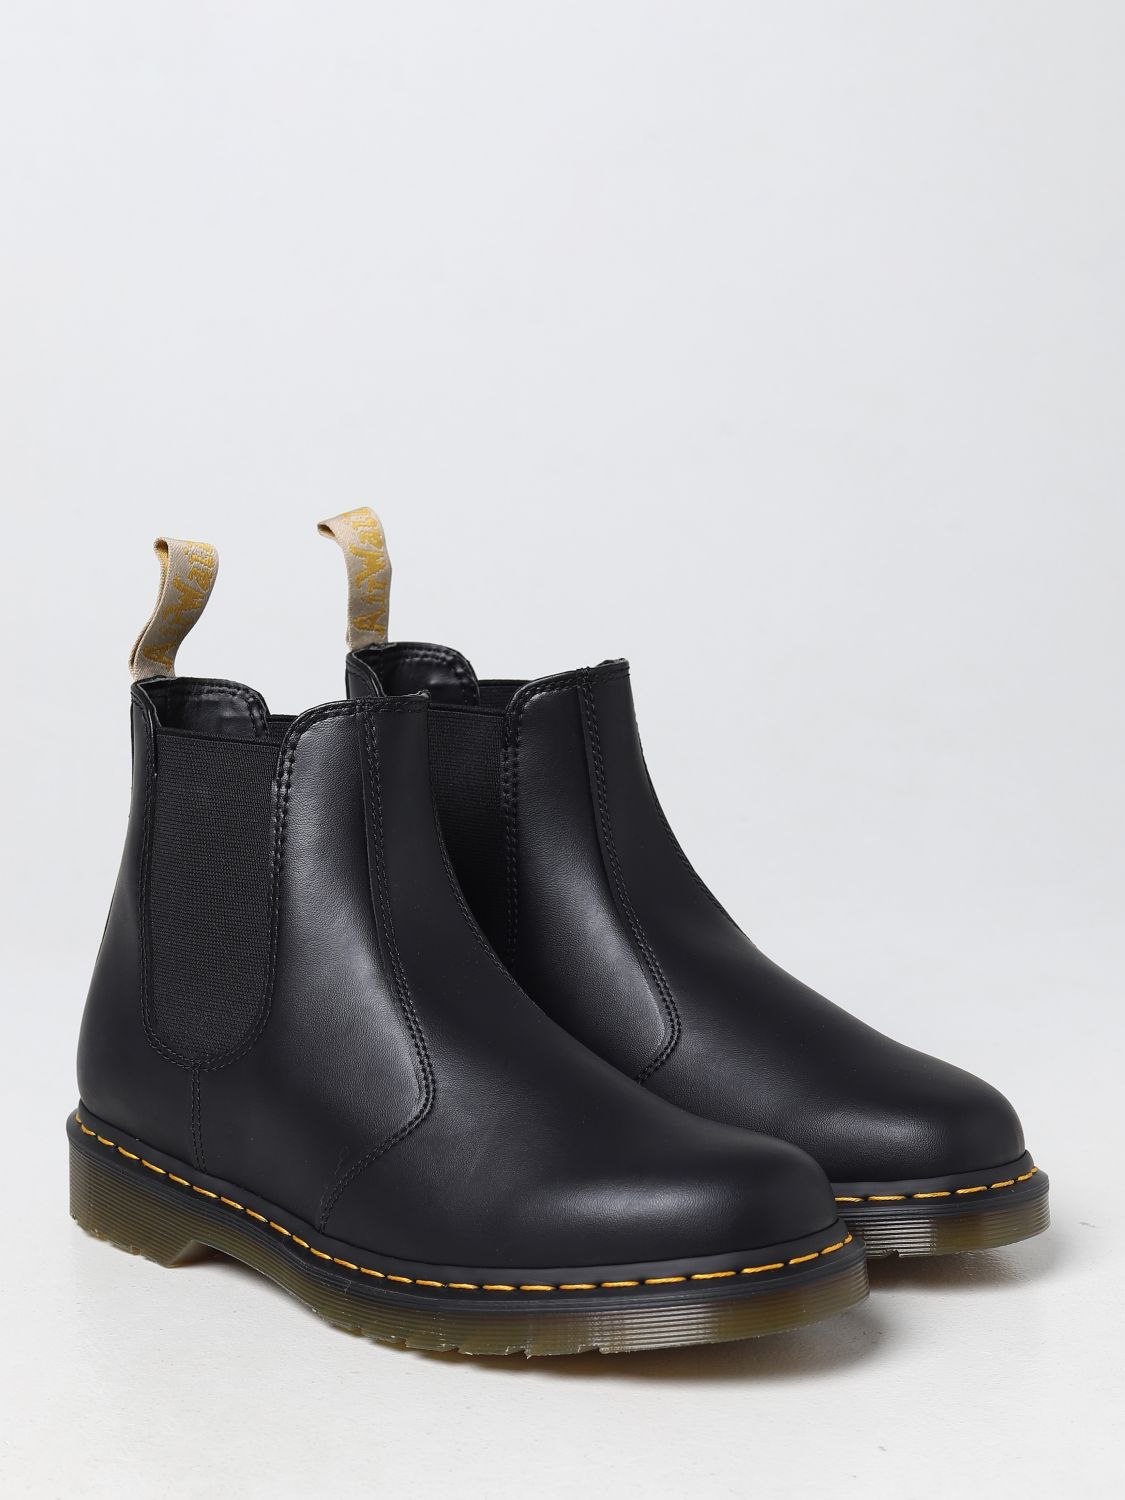 Worstelen invoer Umeki DR. MARTENS: boots for man - Black | Dr. Martens boots 21456001 online on  GIGLIO.COM